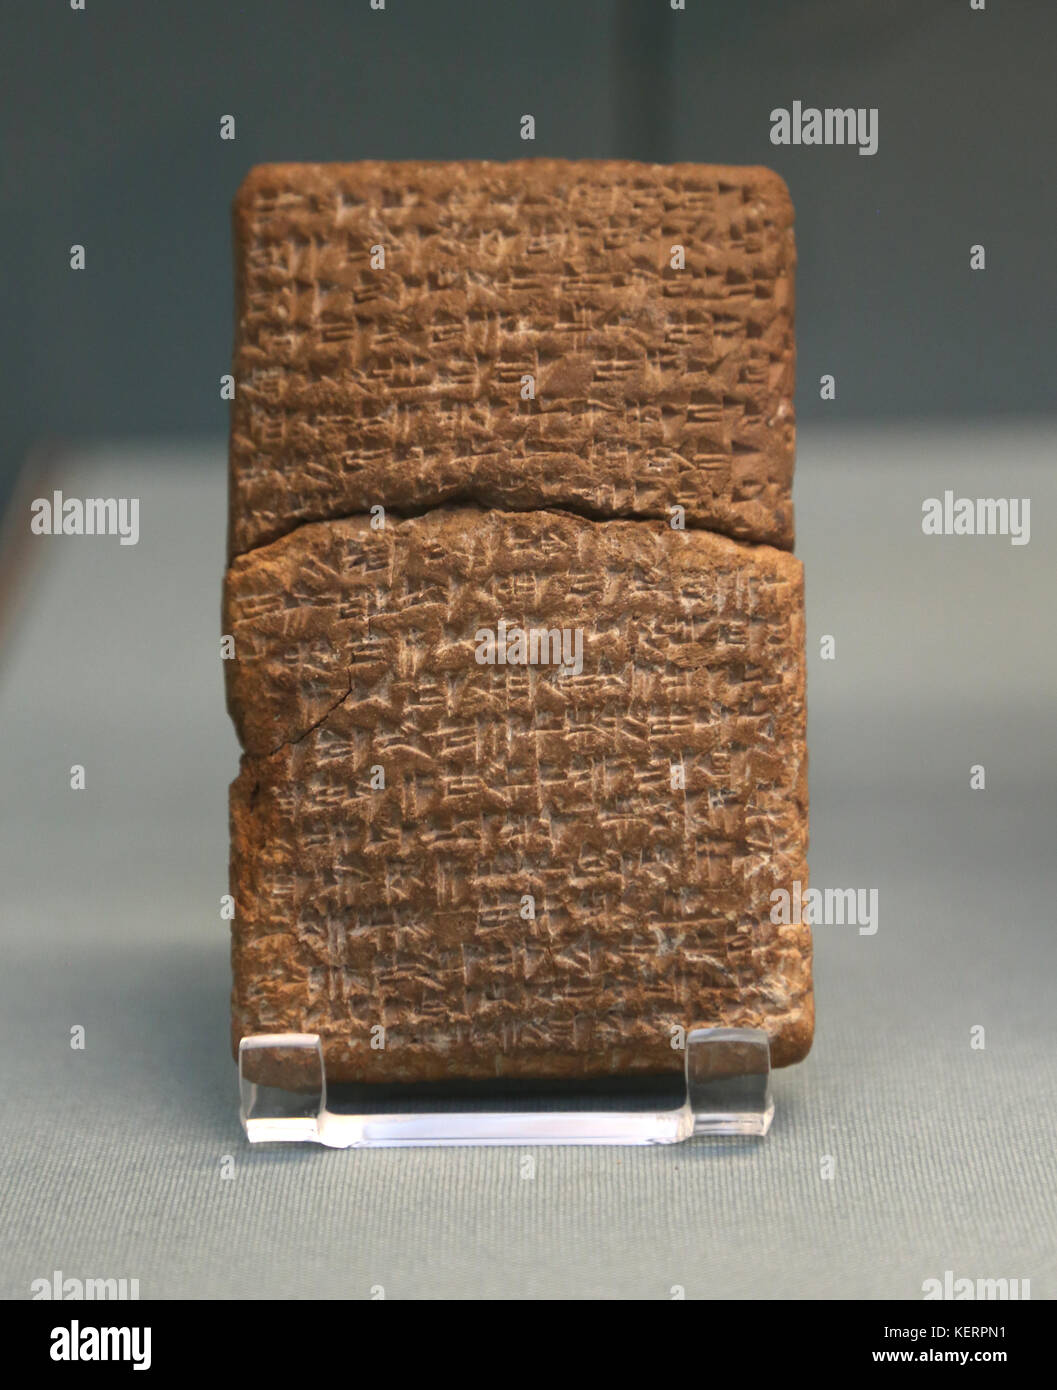 Trattato riguardante Fugitive Slave. 1480 BC, Hittita. Da atchana. a sud-est della Turchia. Clay Tablet. British museum. Londra. gbr. Foto Stock